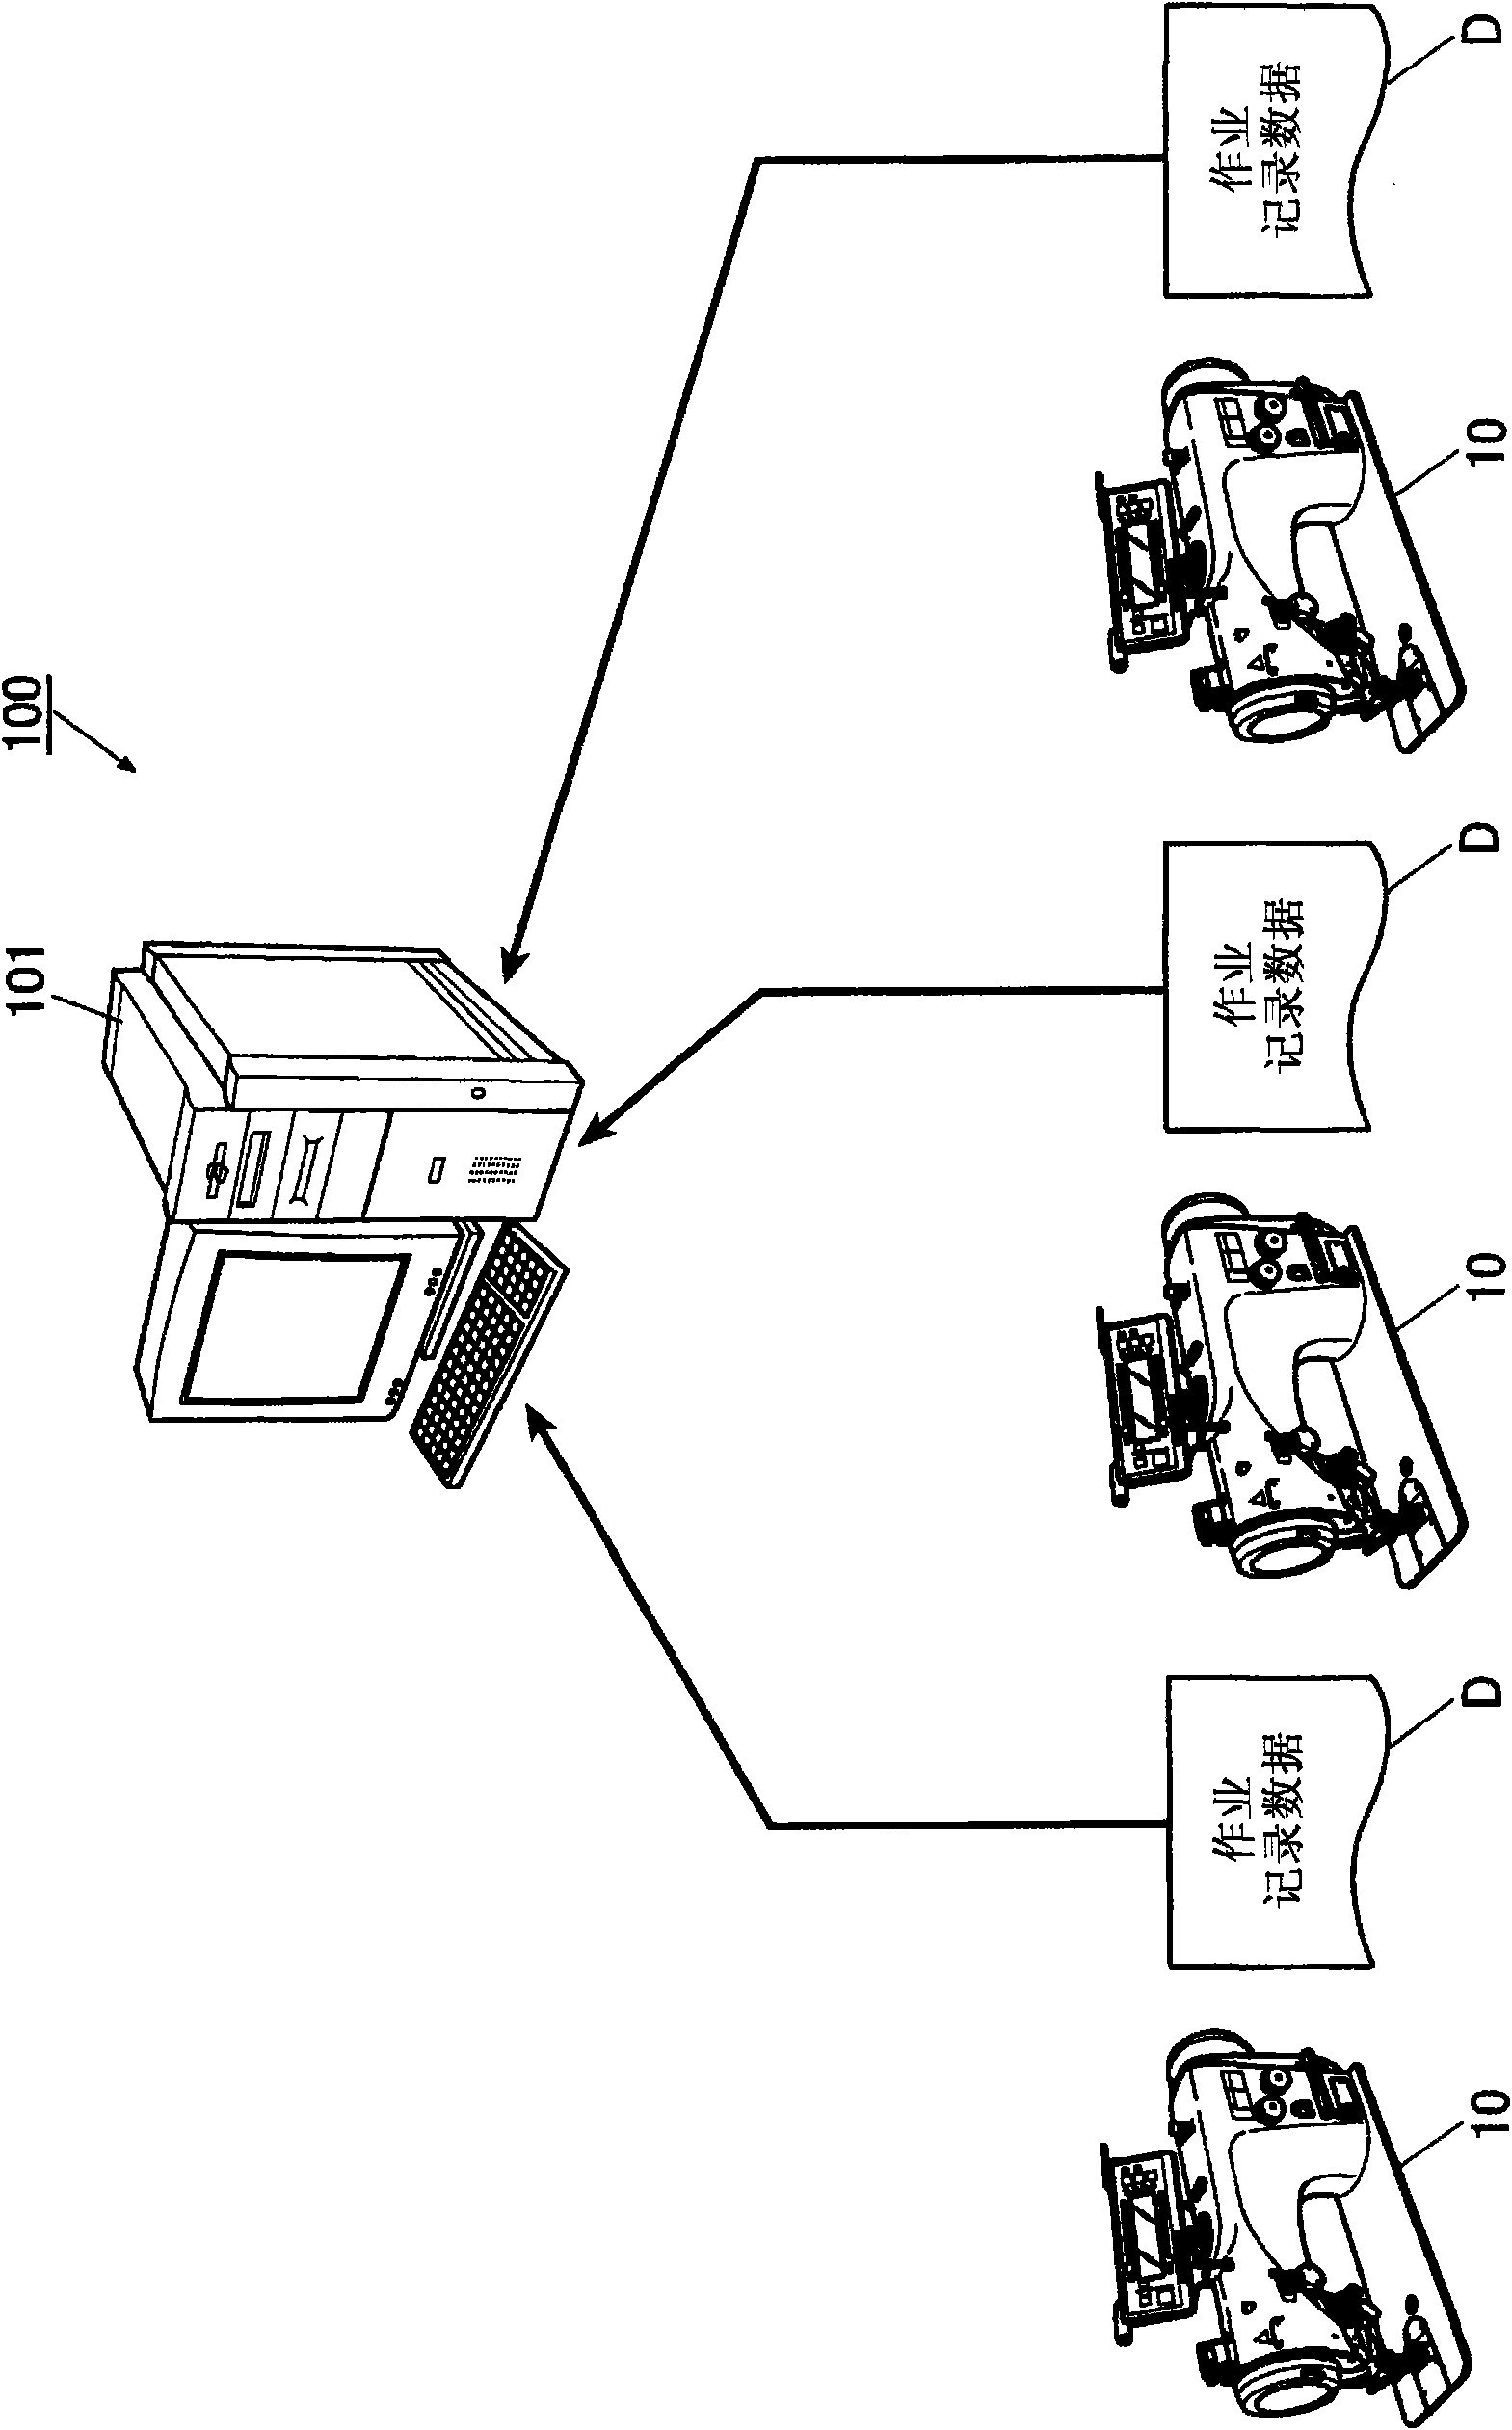 Operation analysis apparatus